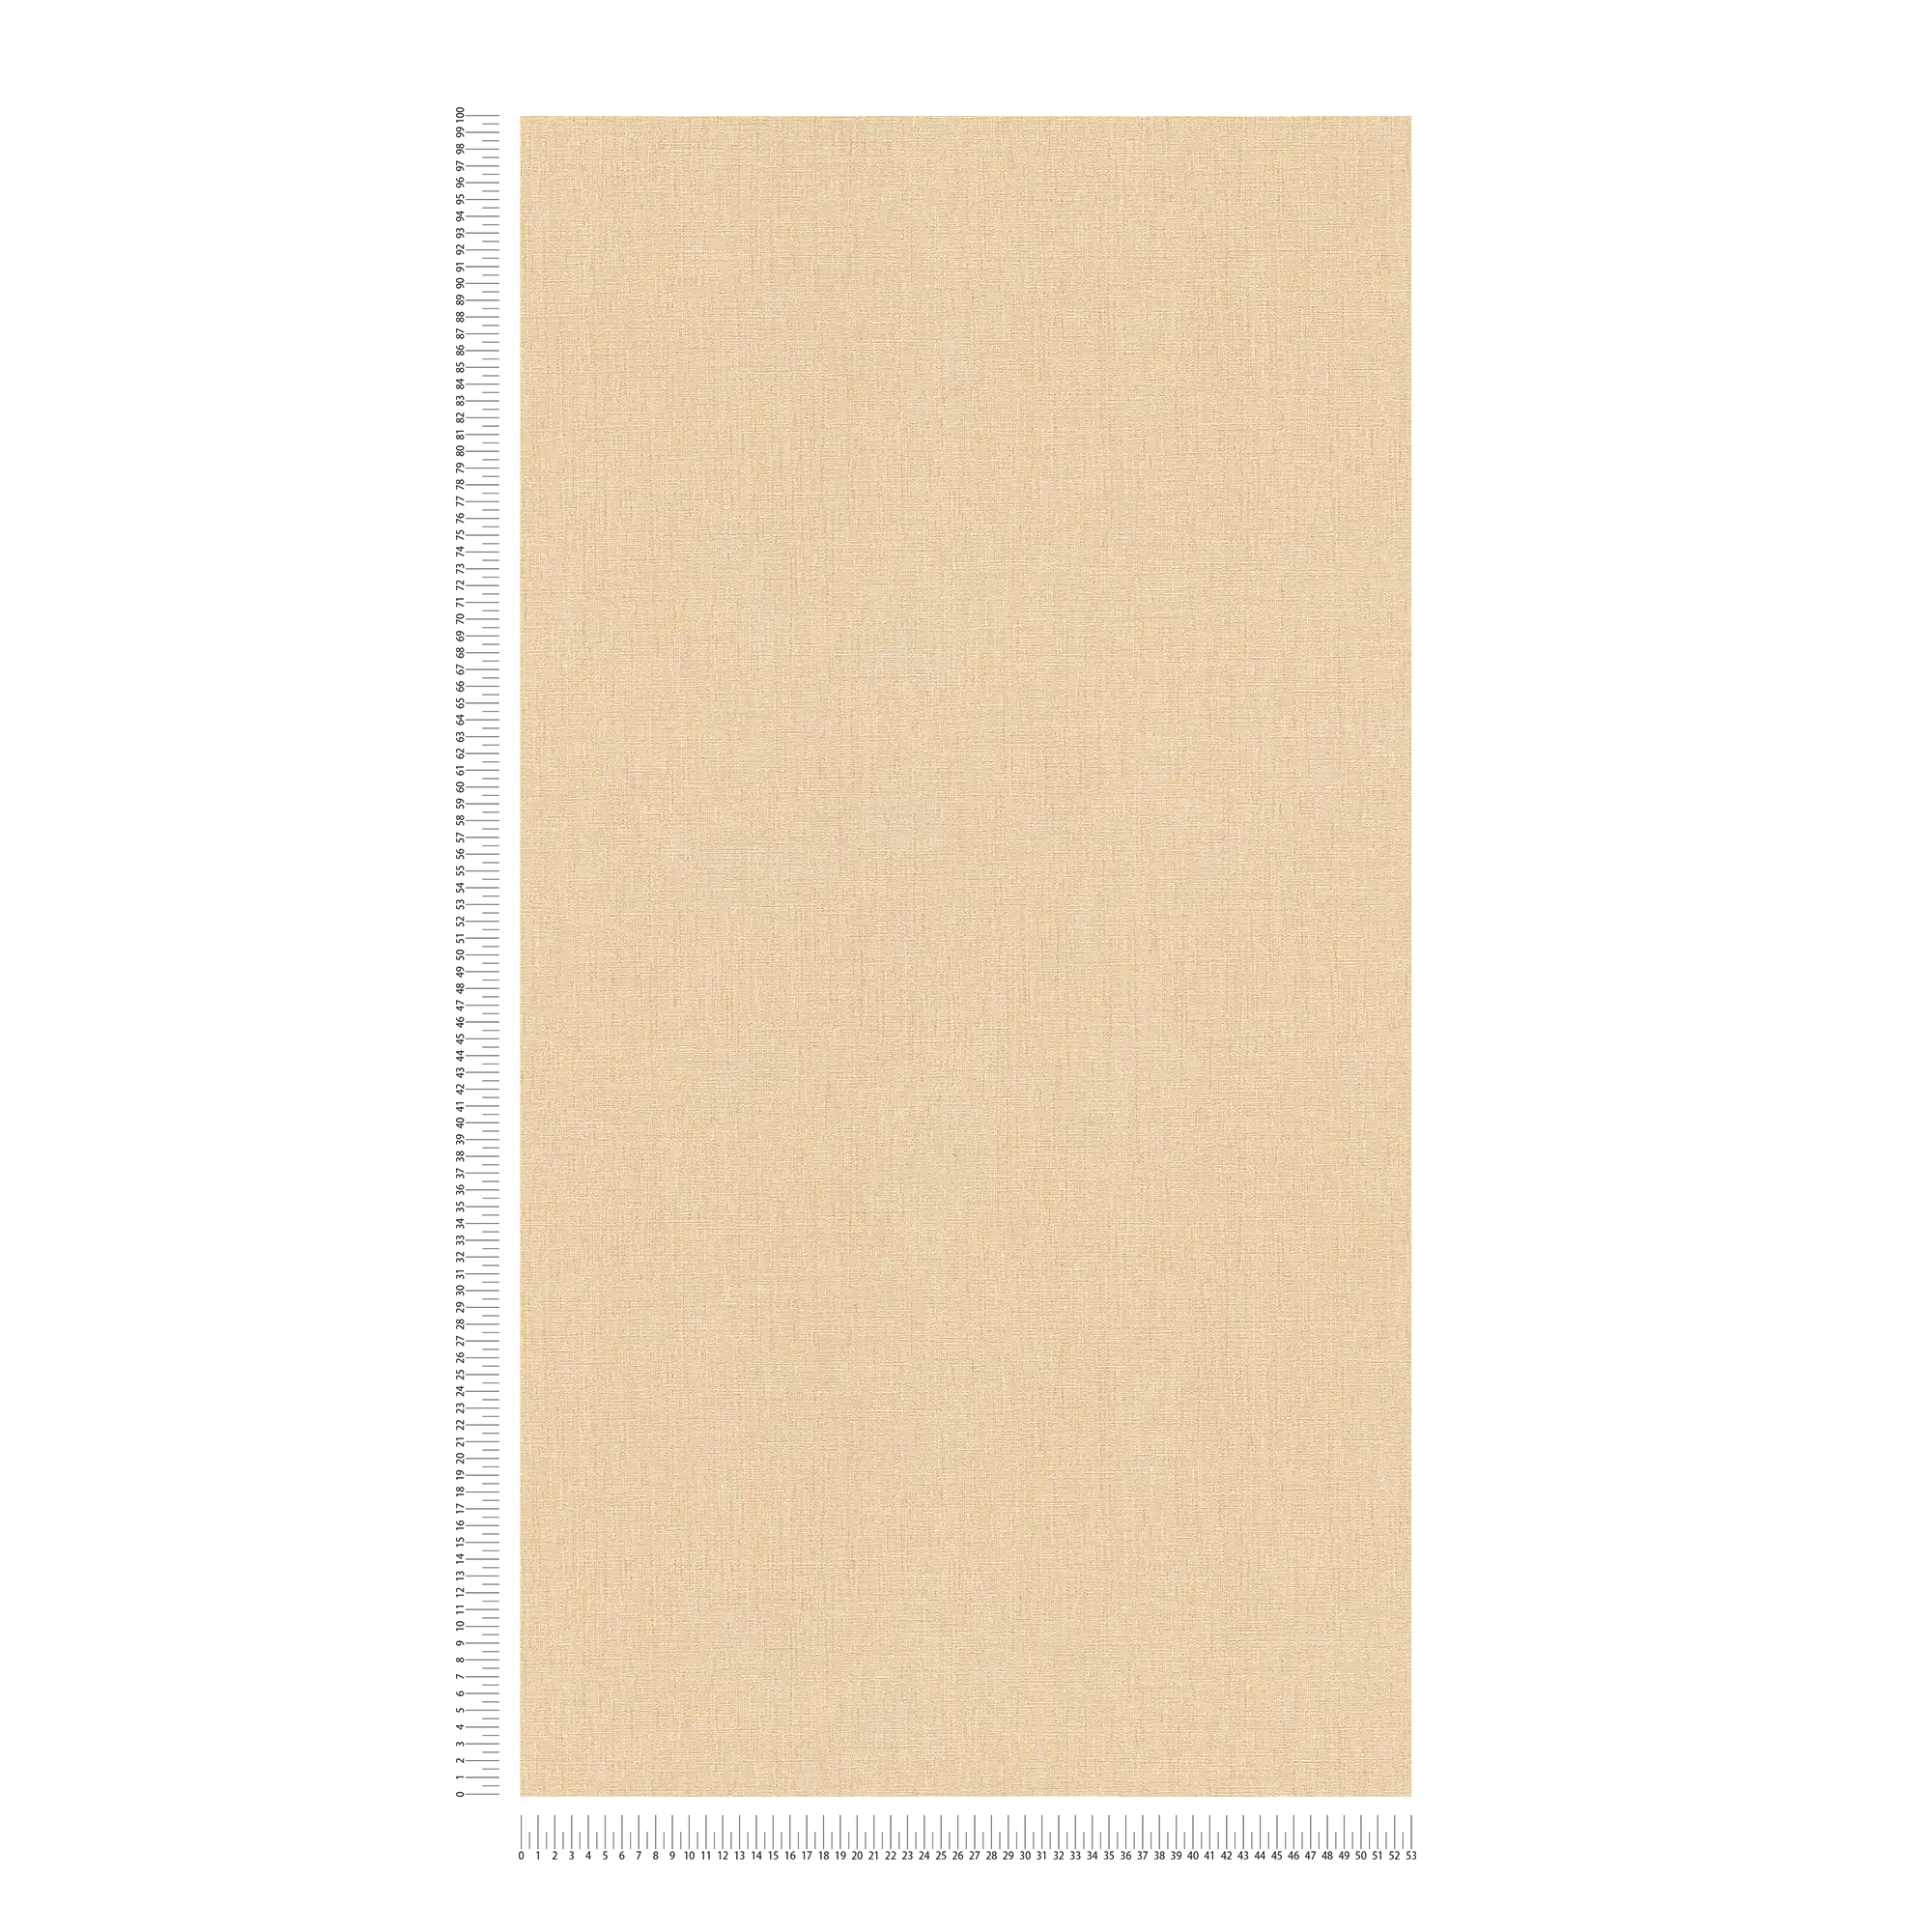             Vliesbehang met een lichte textiellook in een eenvoudige kleurtint - Beige
        